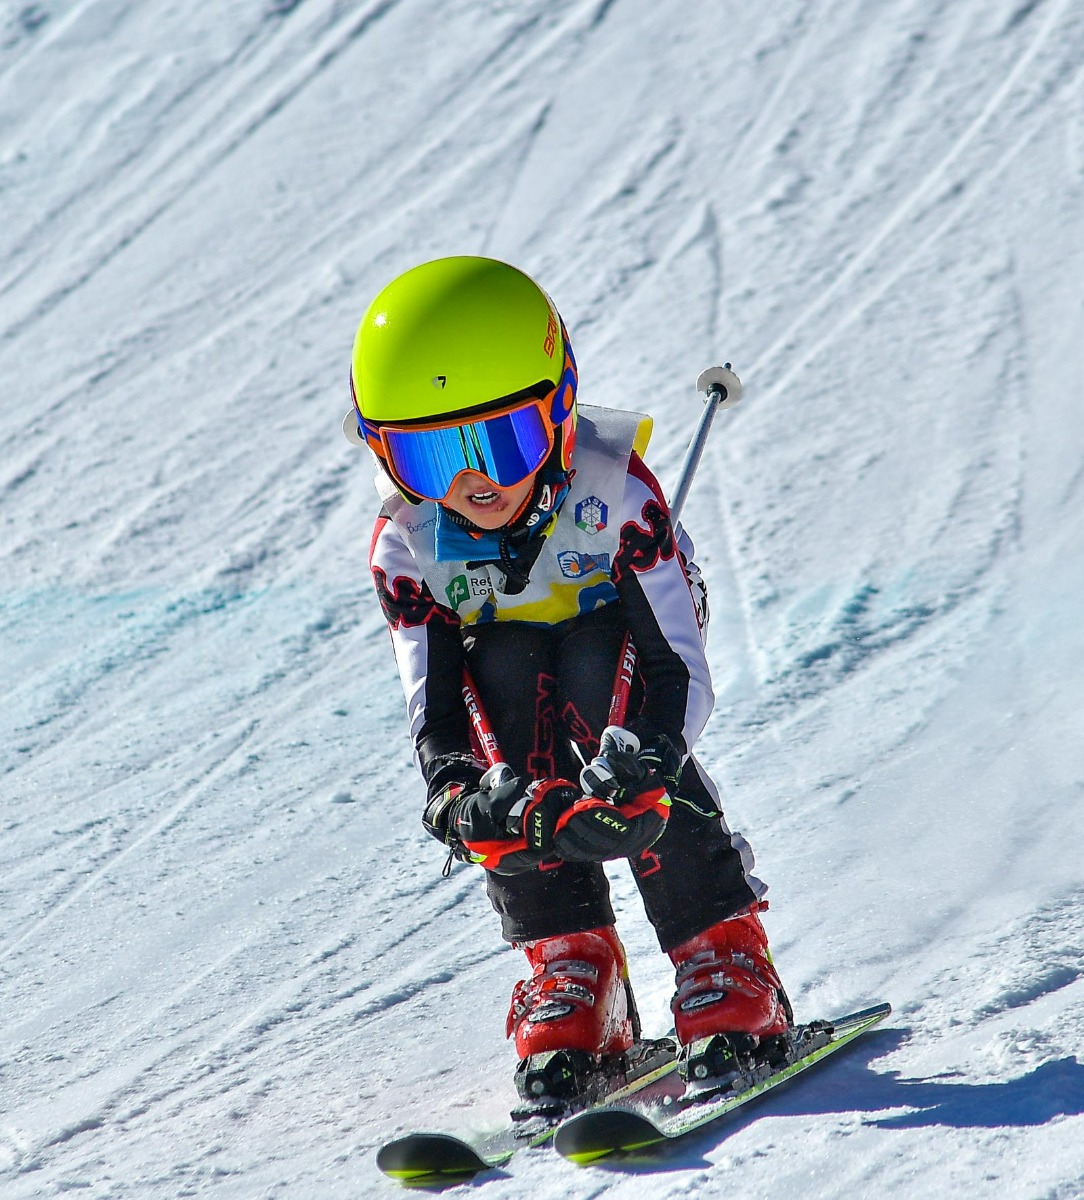 Campionati Regionali di Sci Alpino firmati Cancro Primo Aiuto a Santa Caterina Valfurva. Trionfo di bimbi felici.